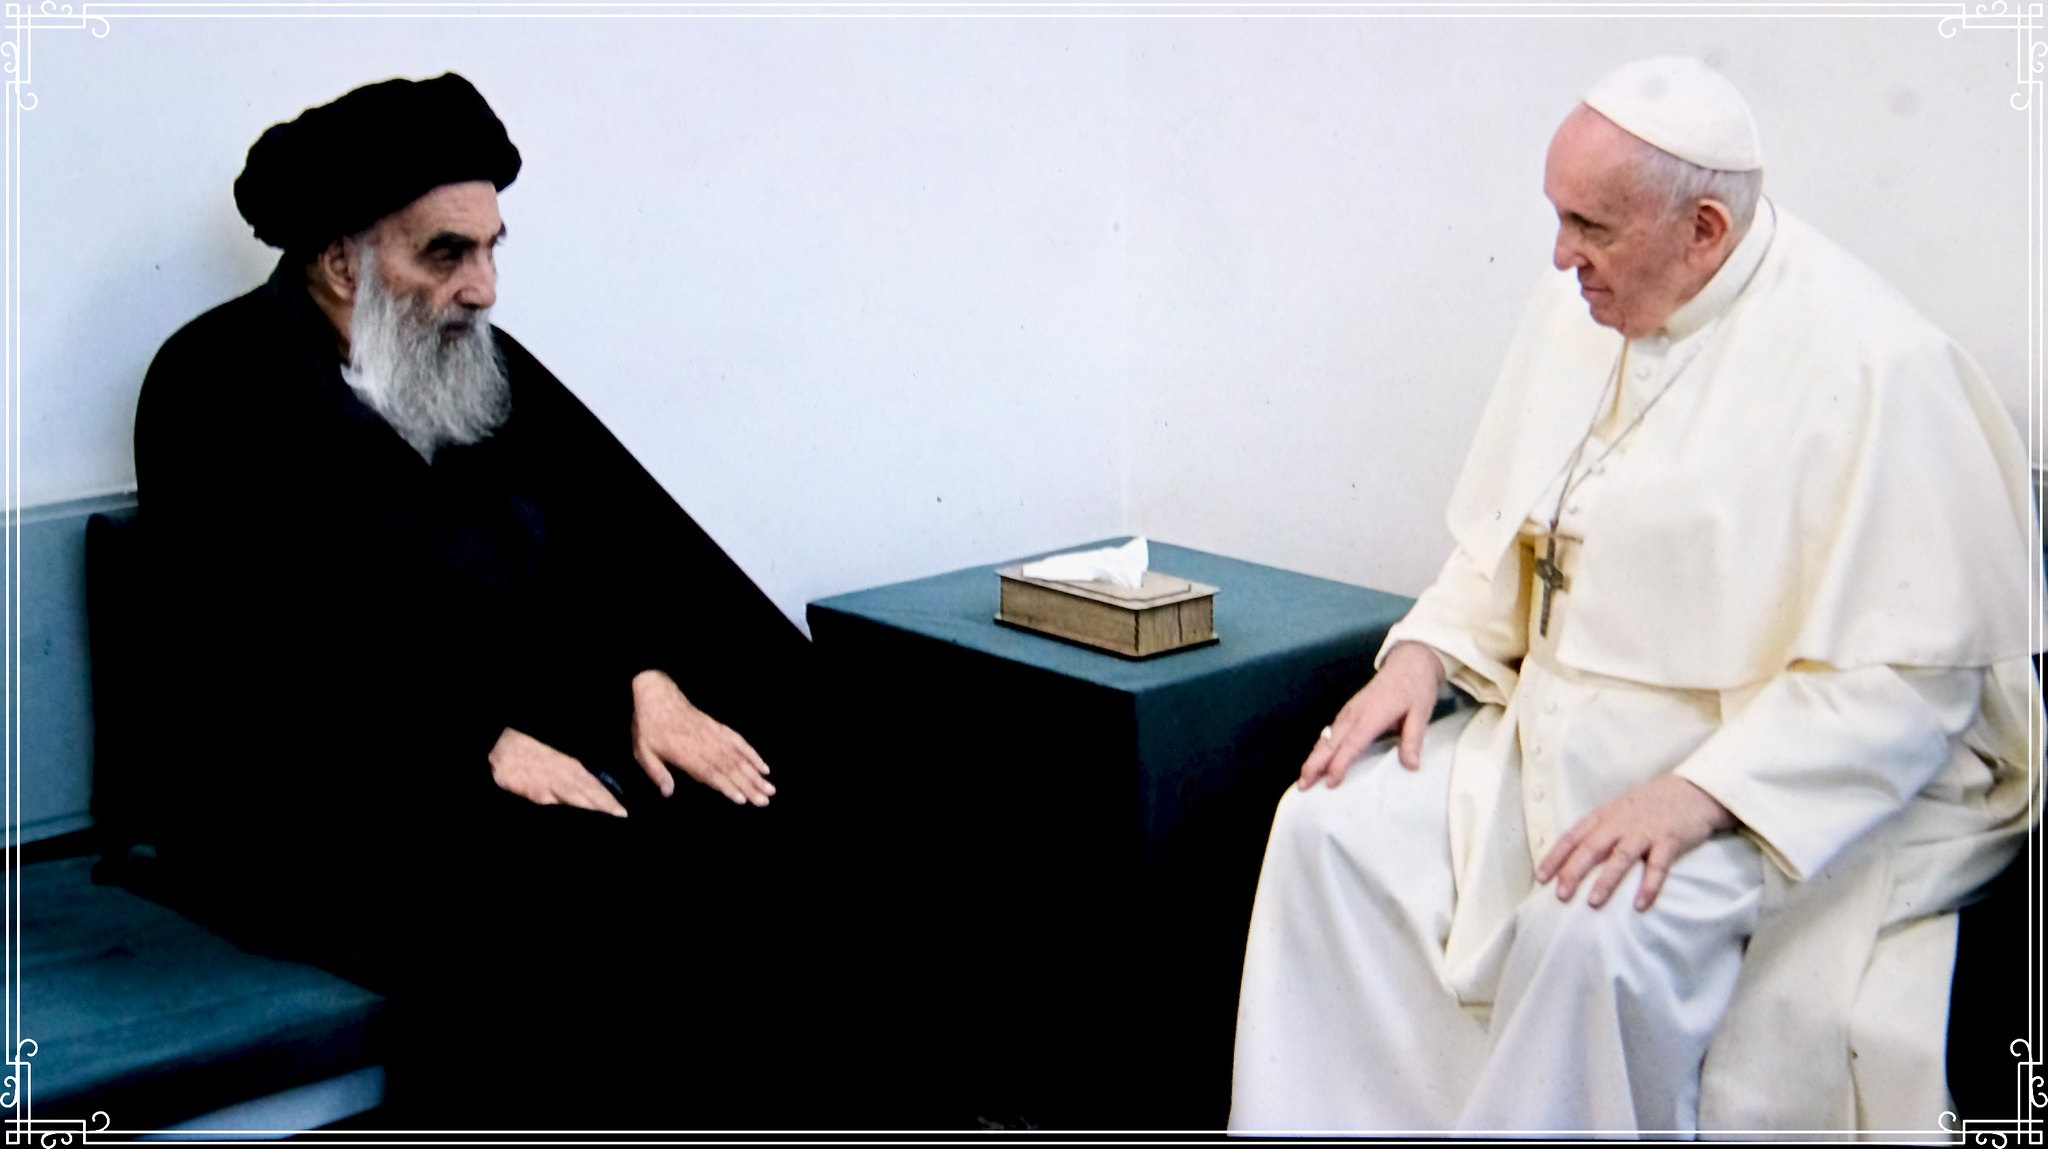 Ключевым моментом визита папы римского стала его встреча в Эн-Наджаф с великим аятоллой Али аль-Систани, духовным лидером шиитов Ирака.